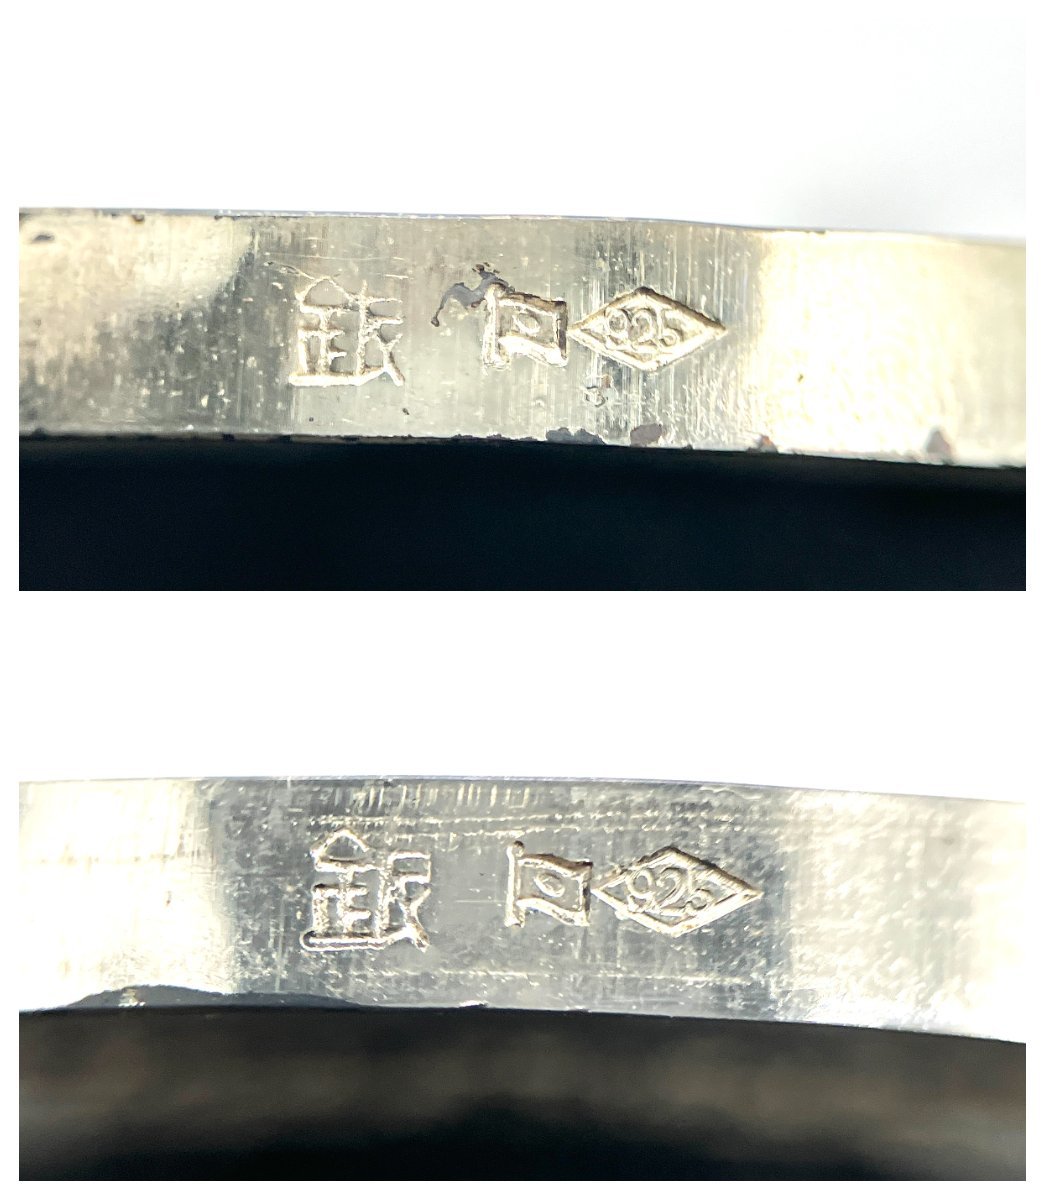 1972年 札幌オリンピック ミュンヘンオリンピック 記念 銀メダル SV925 計 54.8g 2枚 シルバー製品 ケース付き_画像6